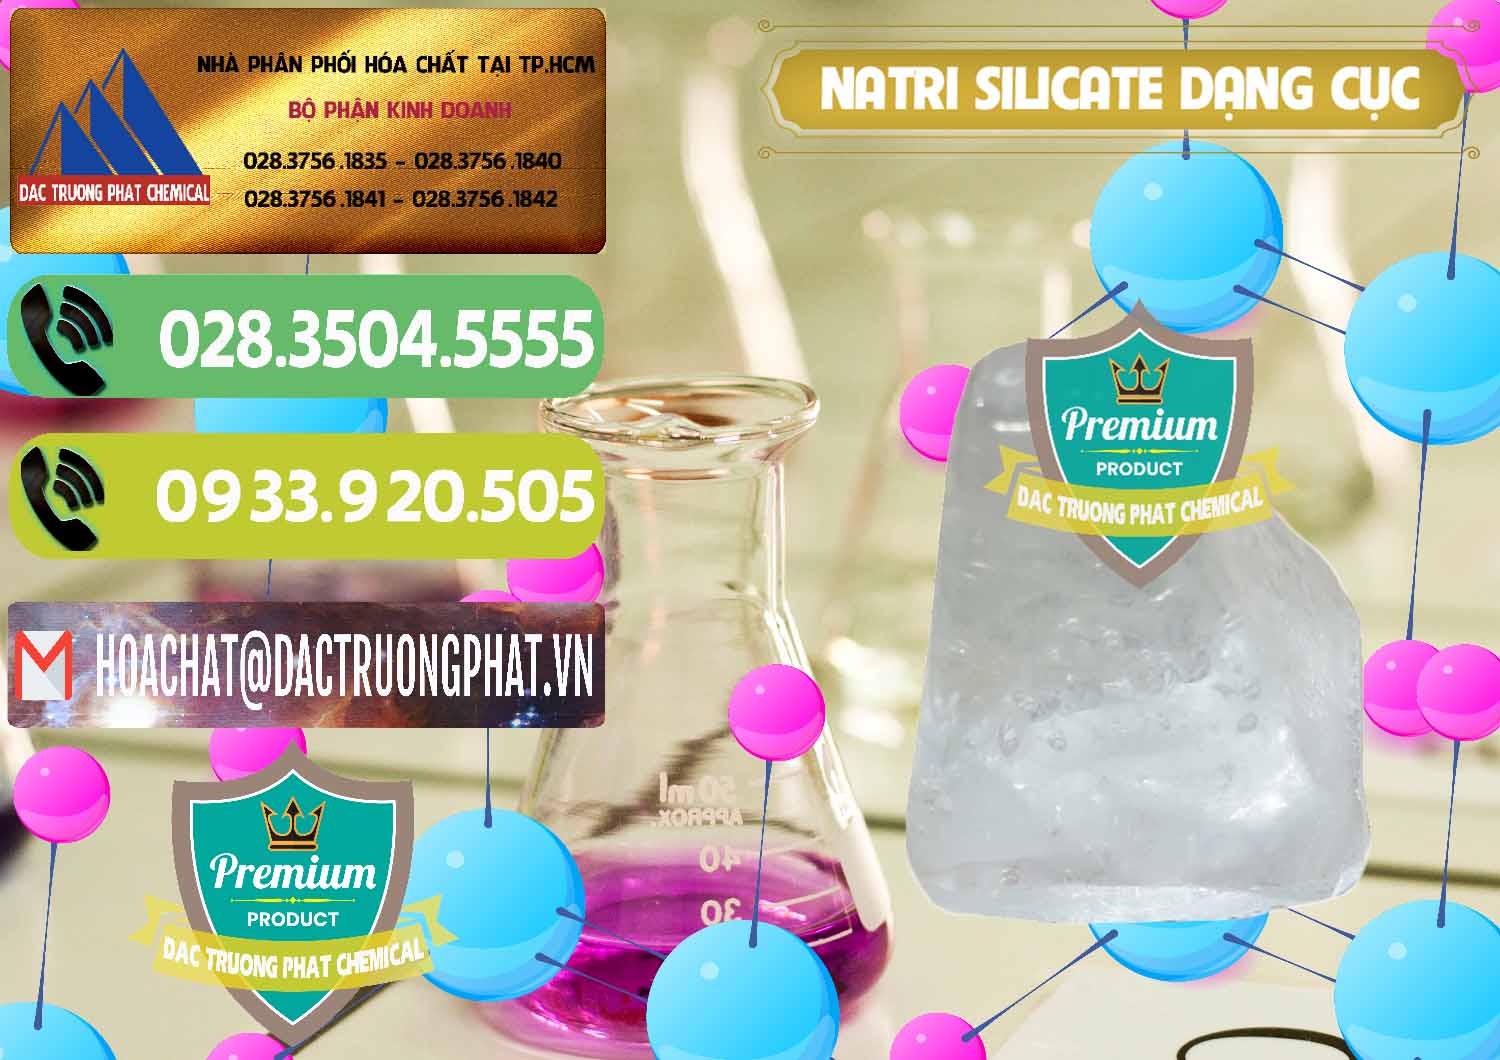 Đơn vị chuyên kinh doanh ( bán ) Natri Silicate - Na2SiO3 - Keo Silicate Dạng Cục Ấn Độ India - 0382 - Cung cấp và nhập khẩu hóa chất tại TP.HCM - hoachatmientay.vn